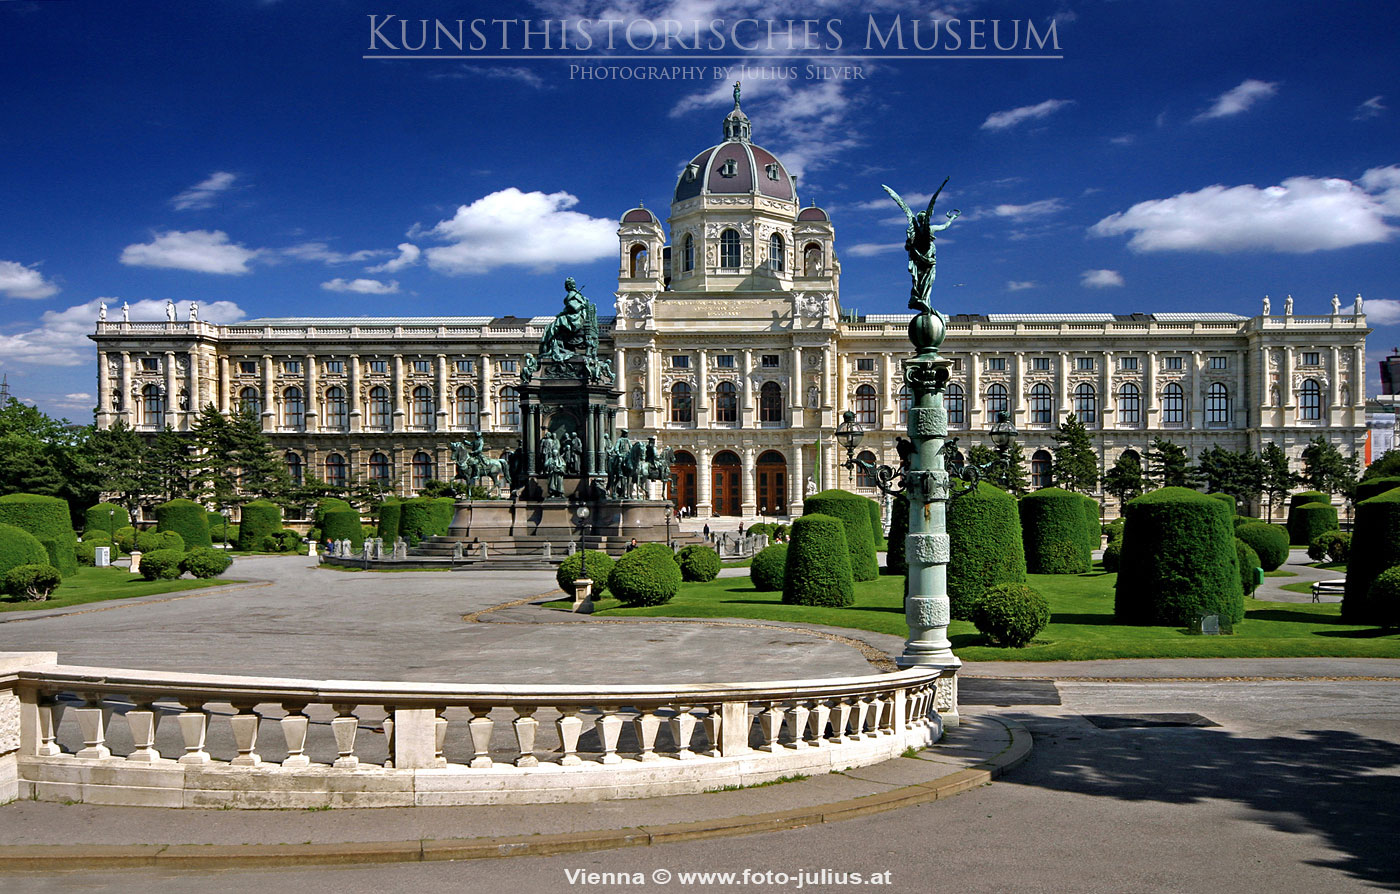 W1761a_Kunsthistorisches_Museum_Wien.jpg, 379kB